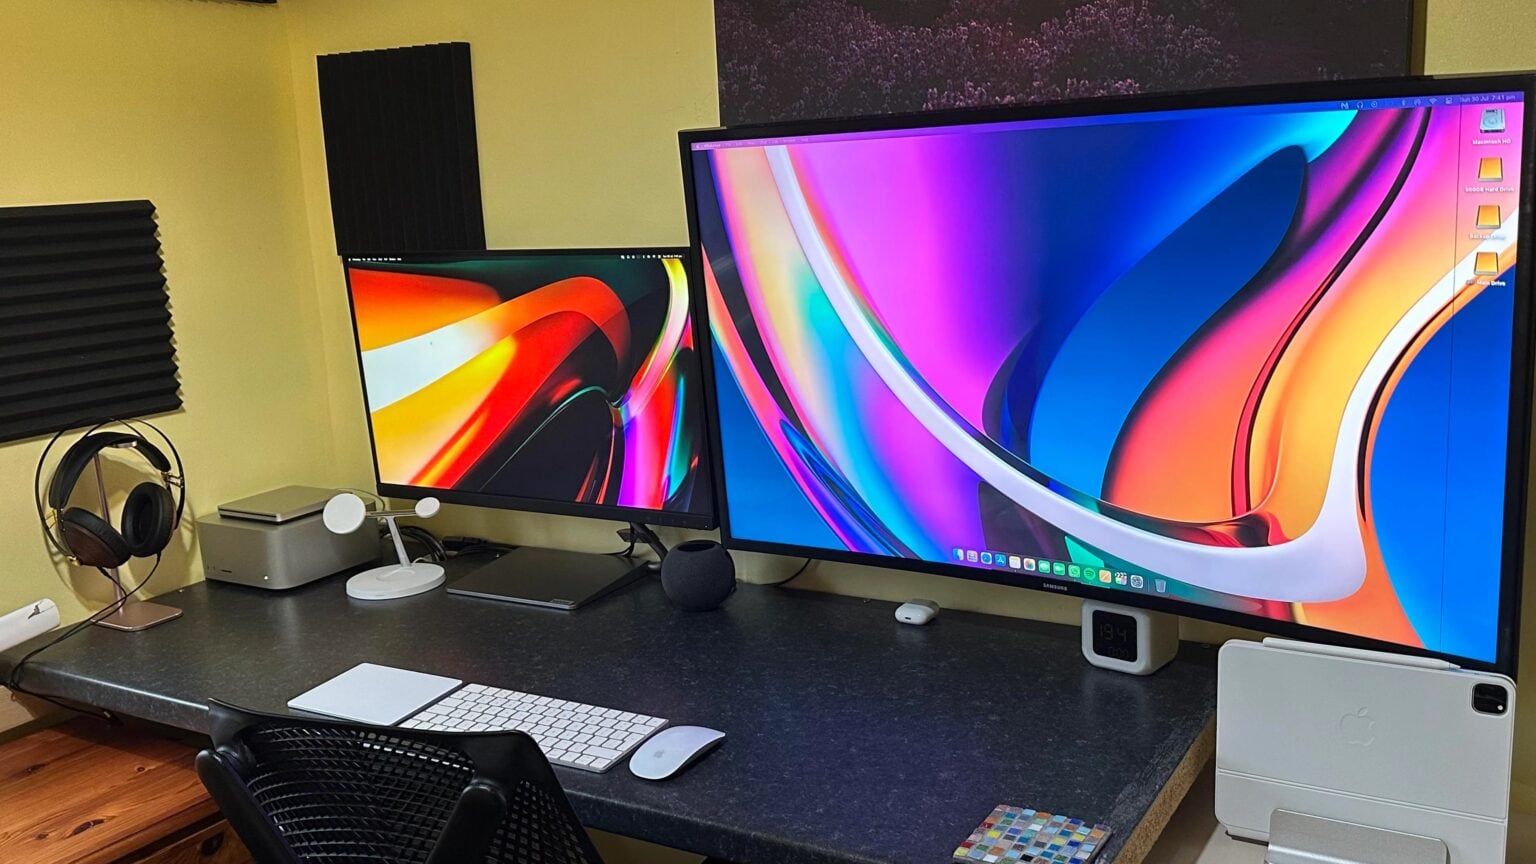 A big Samsung smart TV dominates this Mac Studio rig.